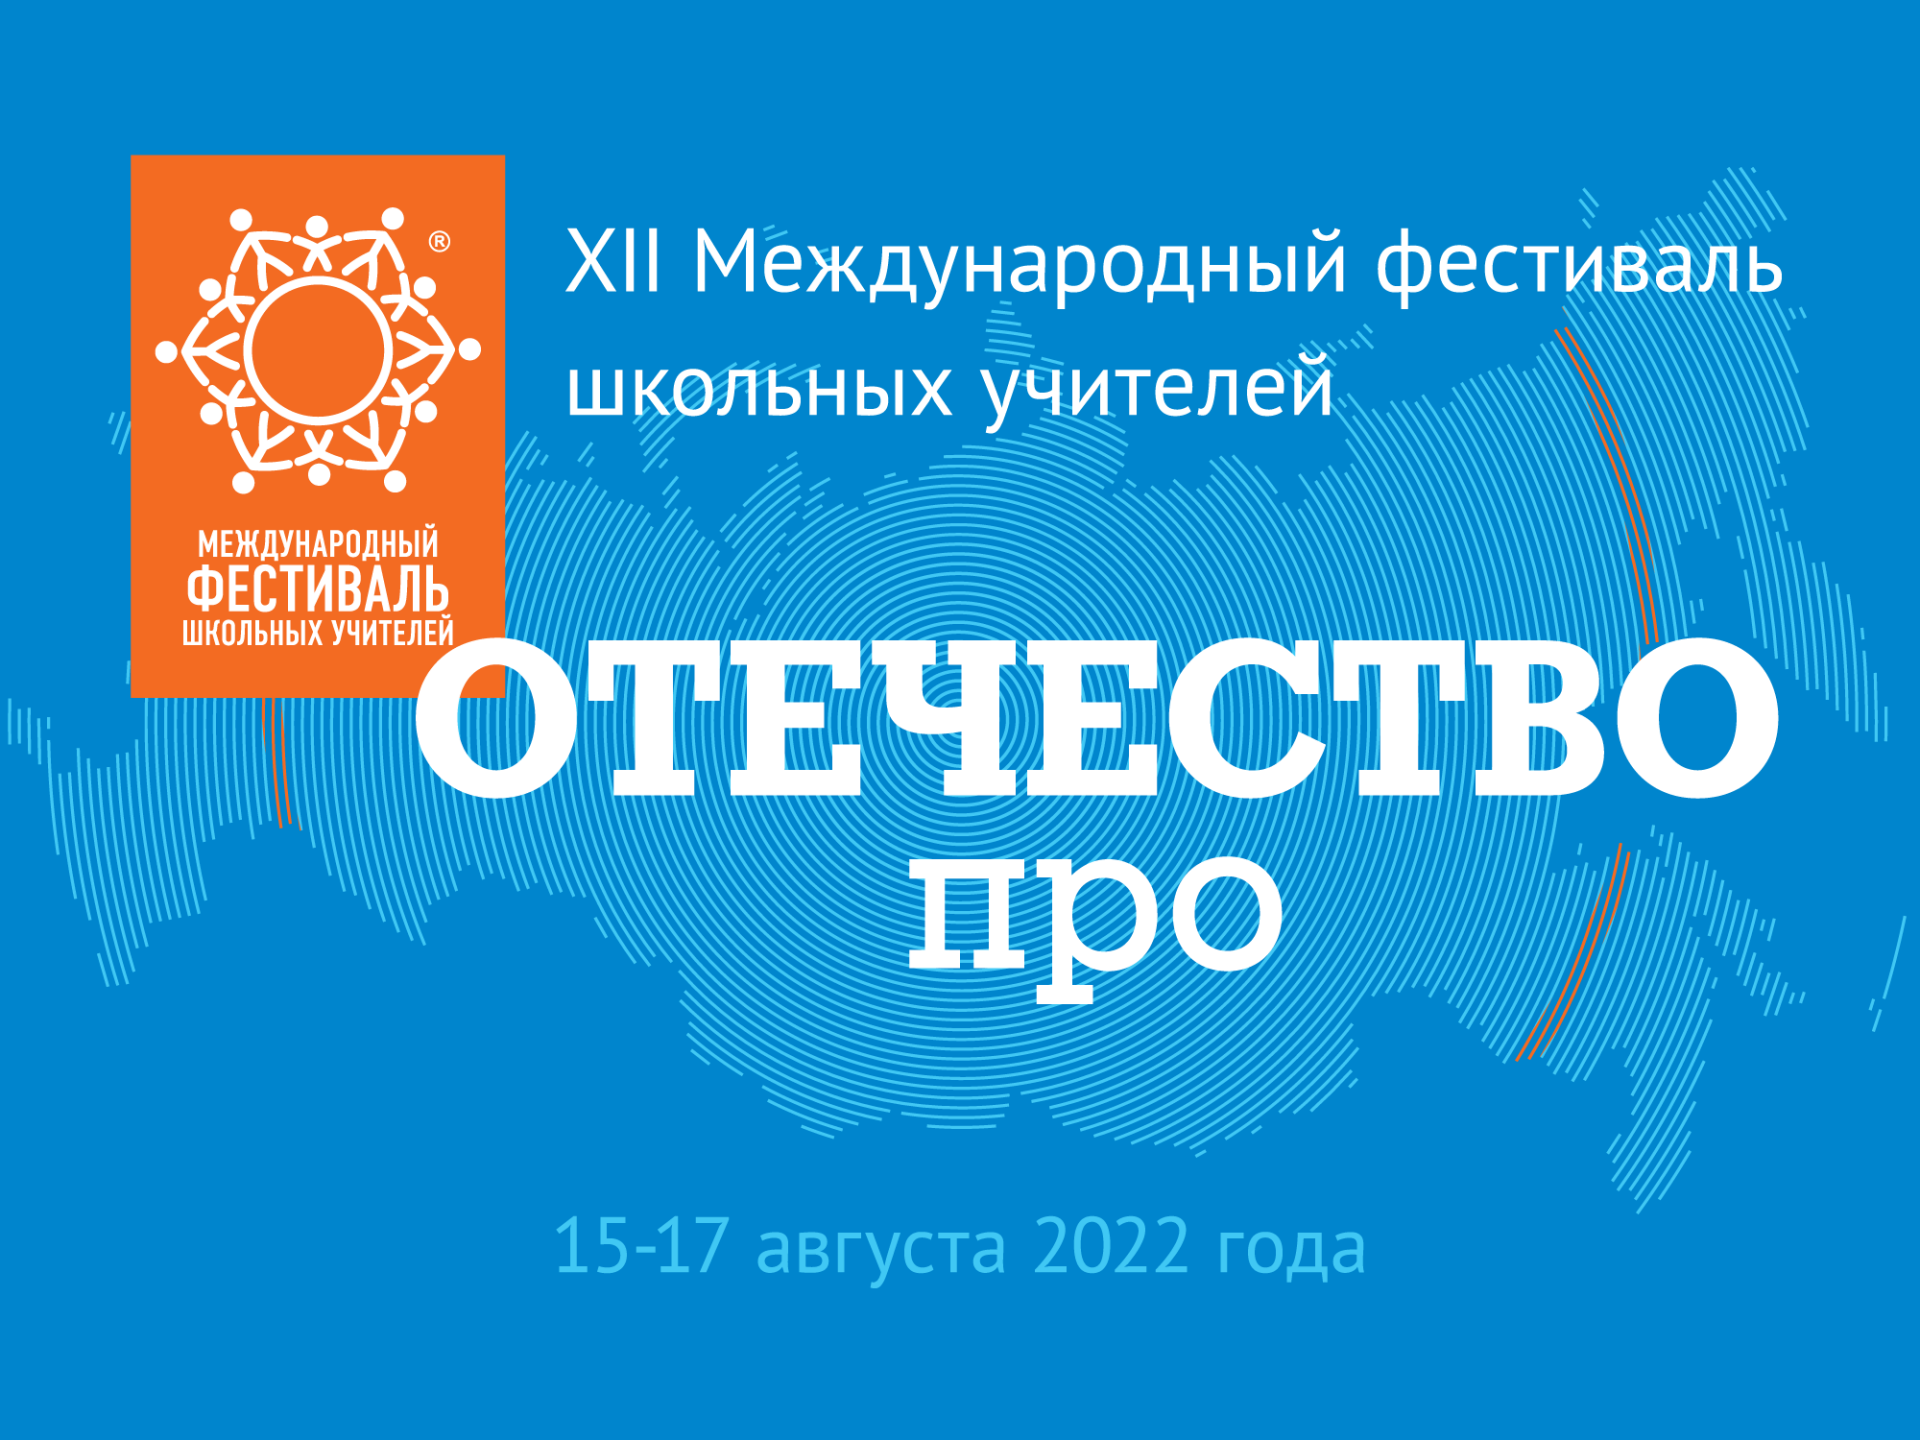 Педагоги из Альметьевска примут участие в XII Международном фестивале школьных учителей